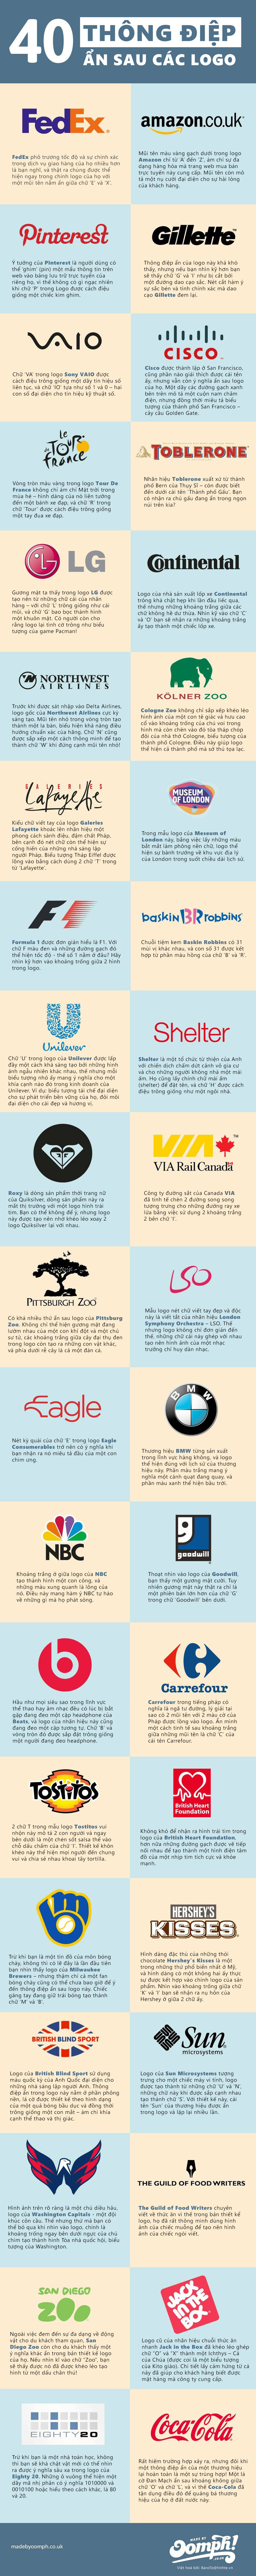 [Infographic] 40 logo ẩn chứa thông điệp doanh nghiệp 3